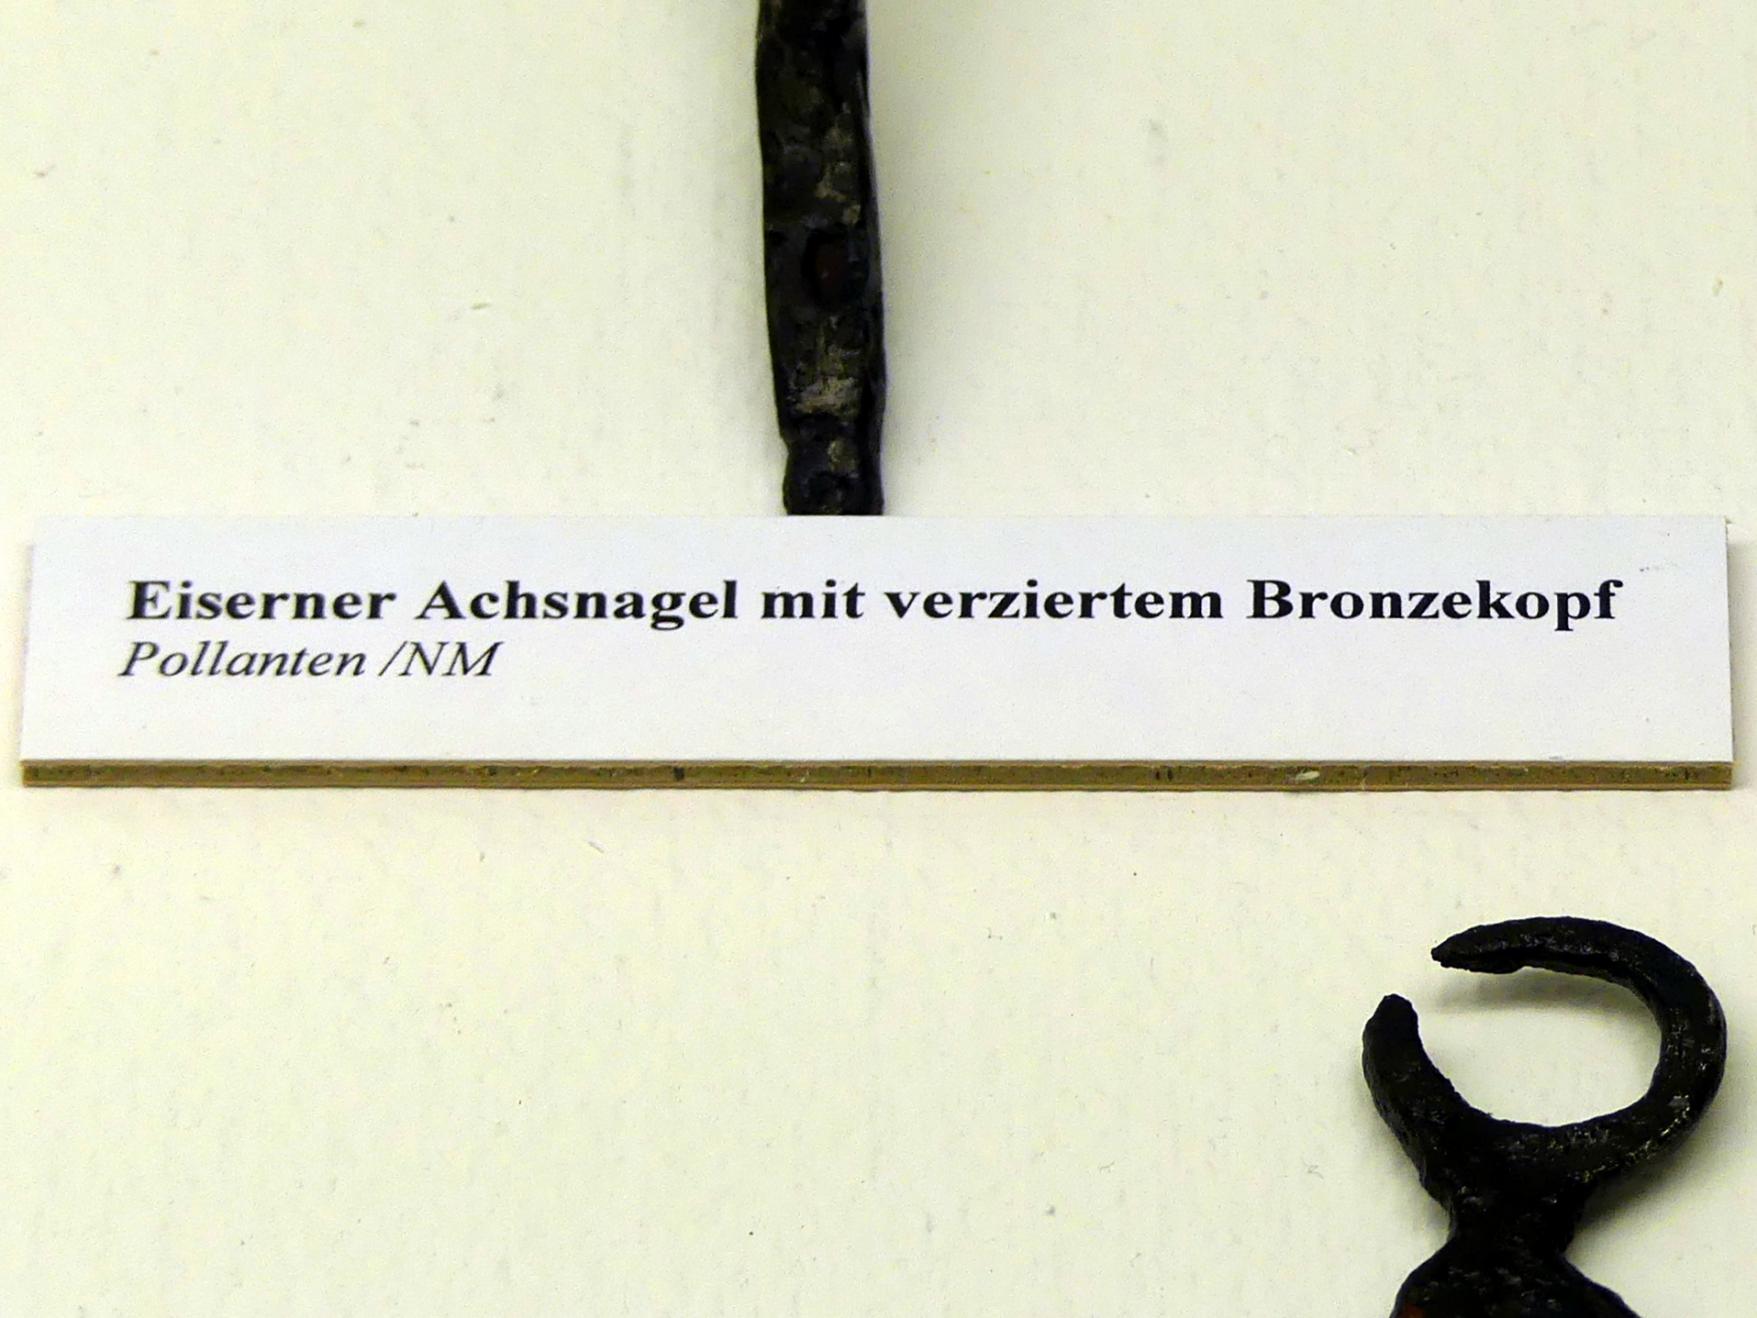 Eisener Achsnagel mit verziertem Bronzekopf, Spätlatènezeit D, 700 - 100 v. Chr., Bild 2/2